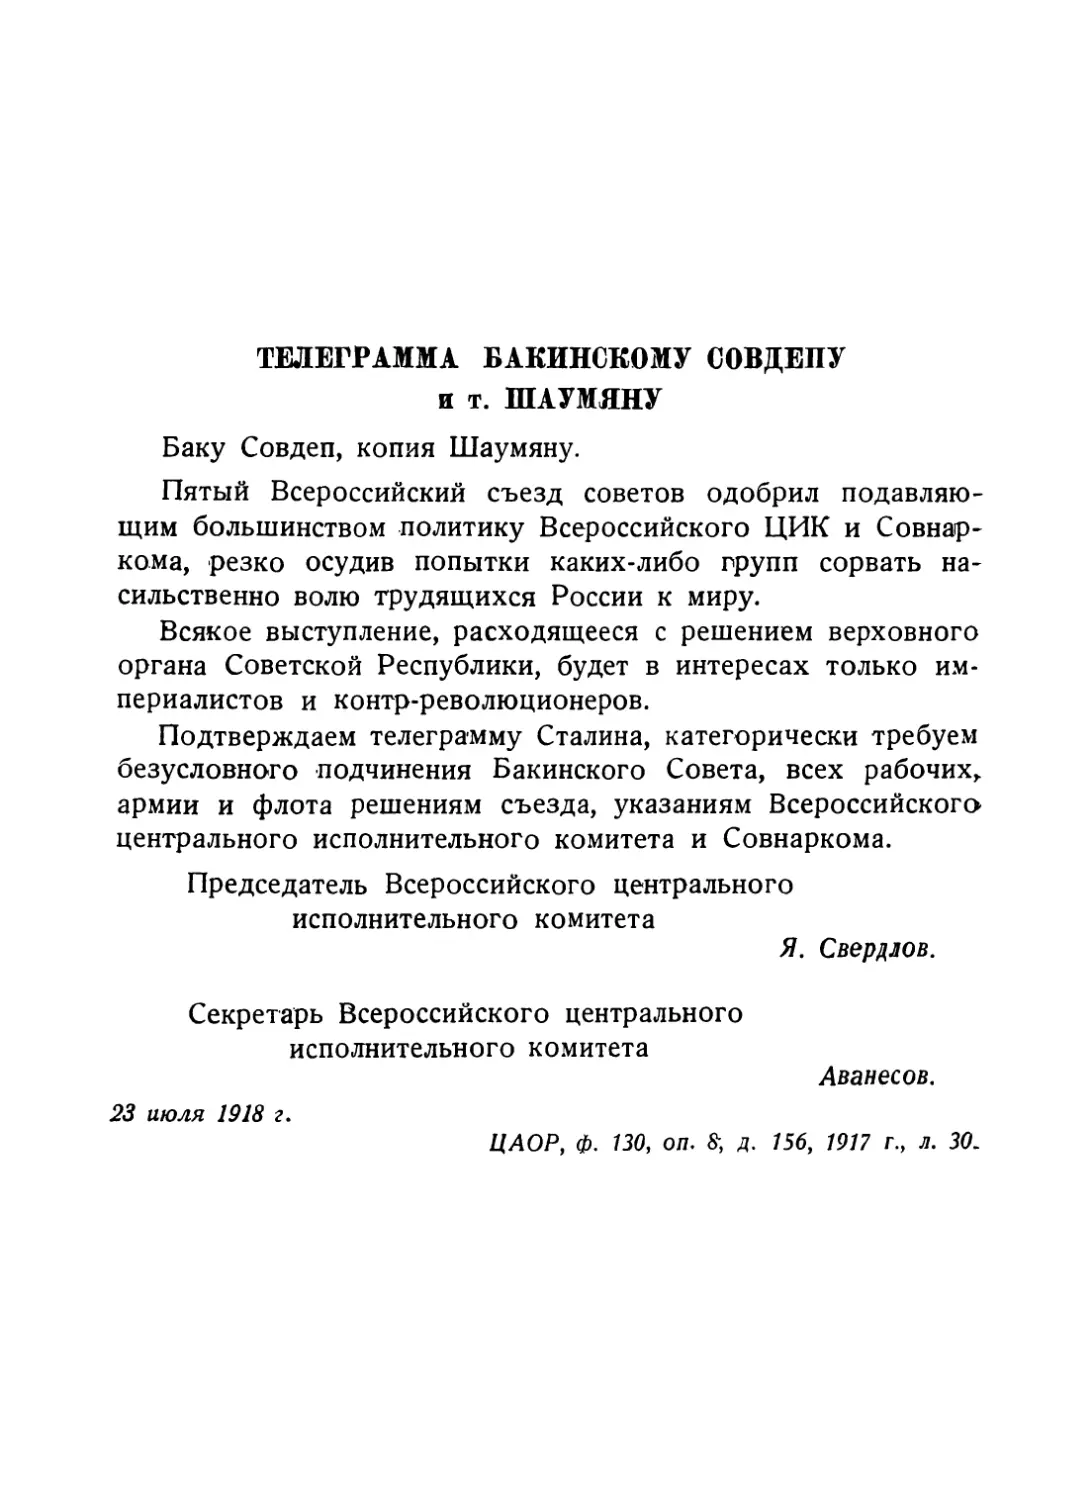 Телеграмма Бакинскому совдепу и т. Шаумяну от 23 июля 1918 г